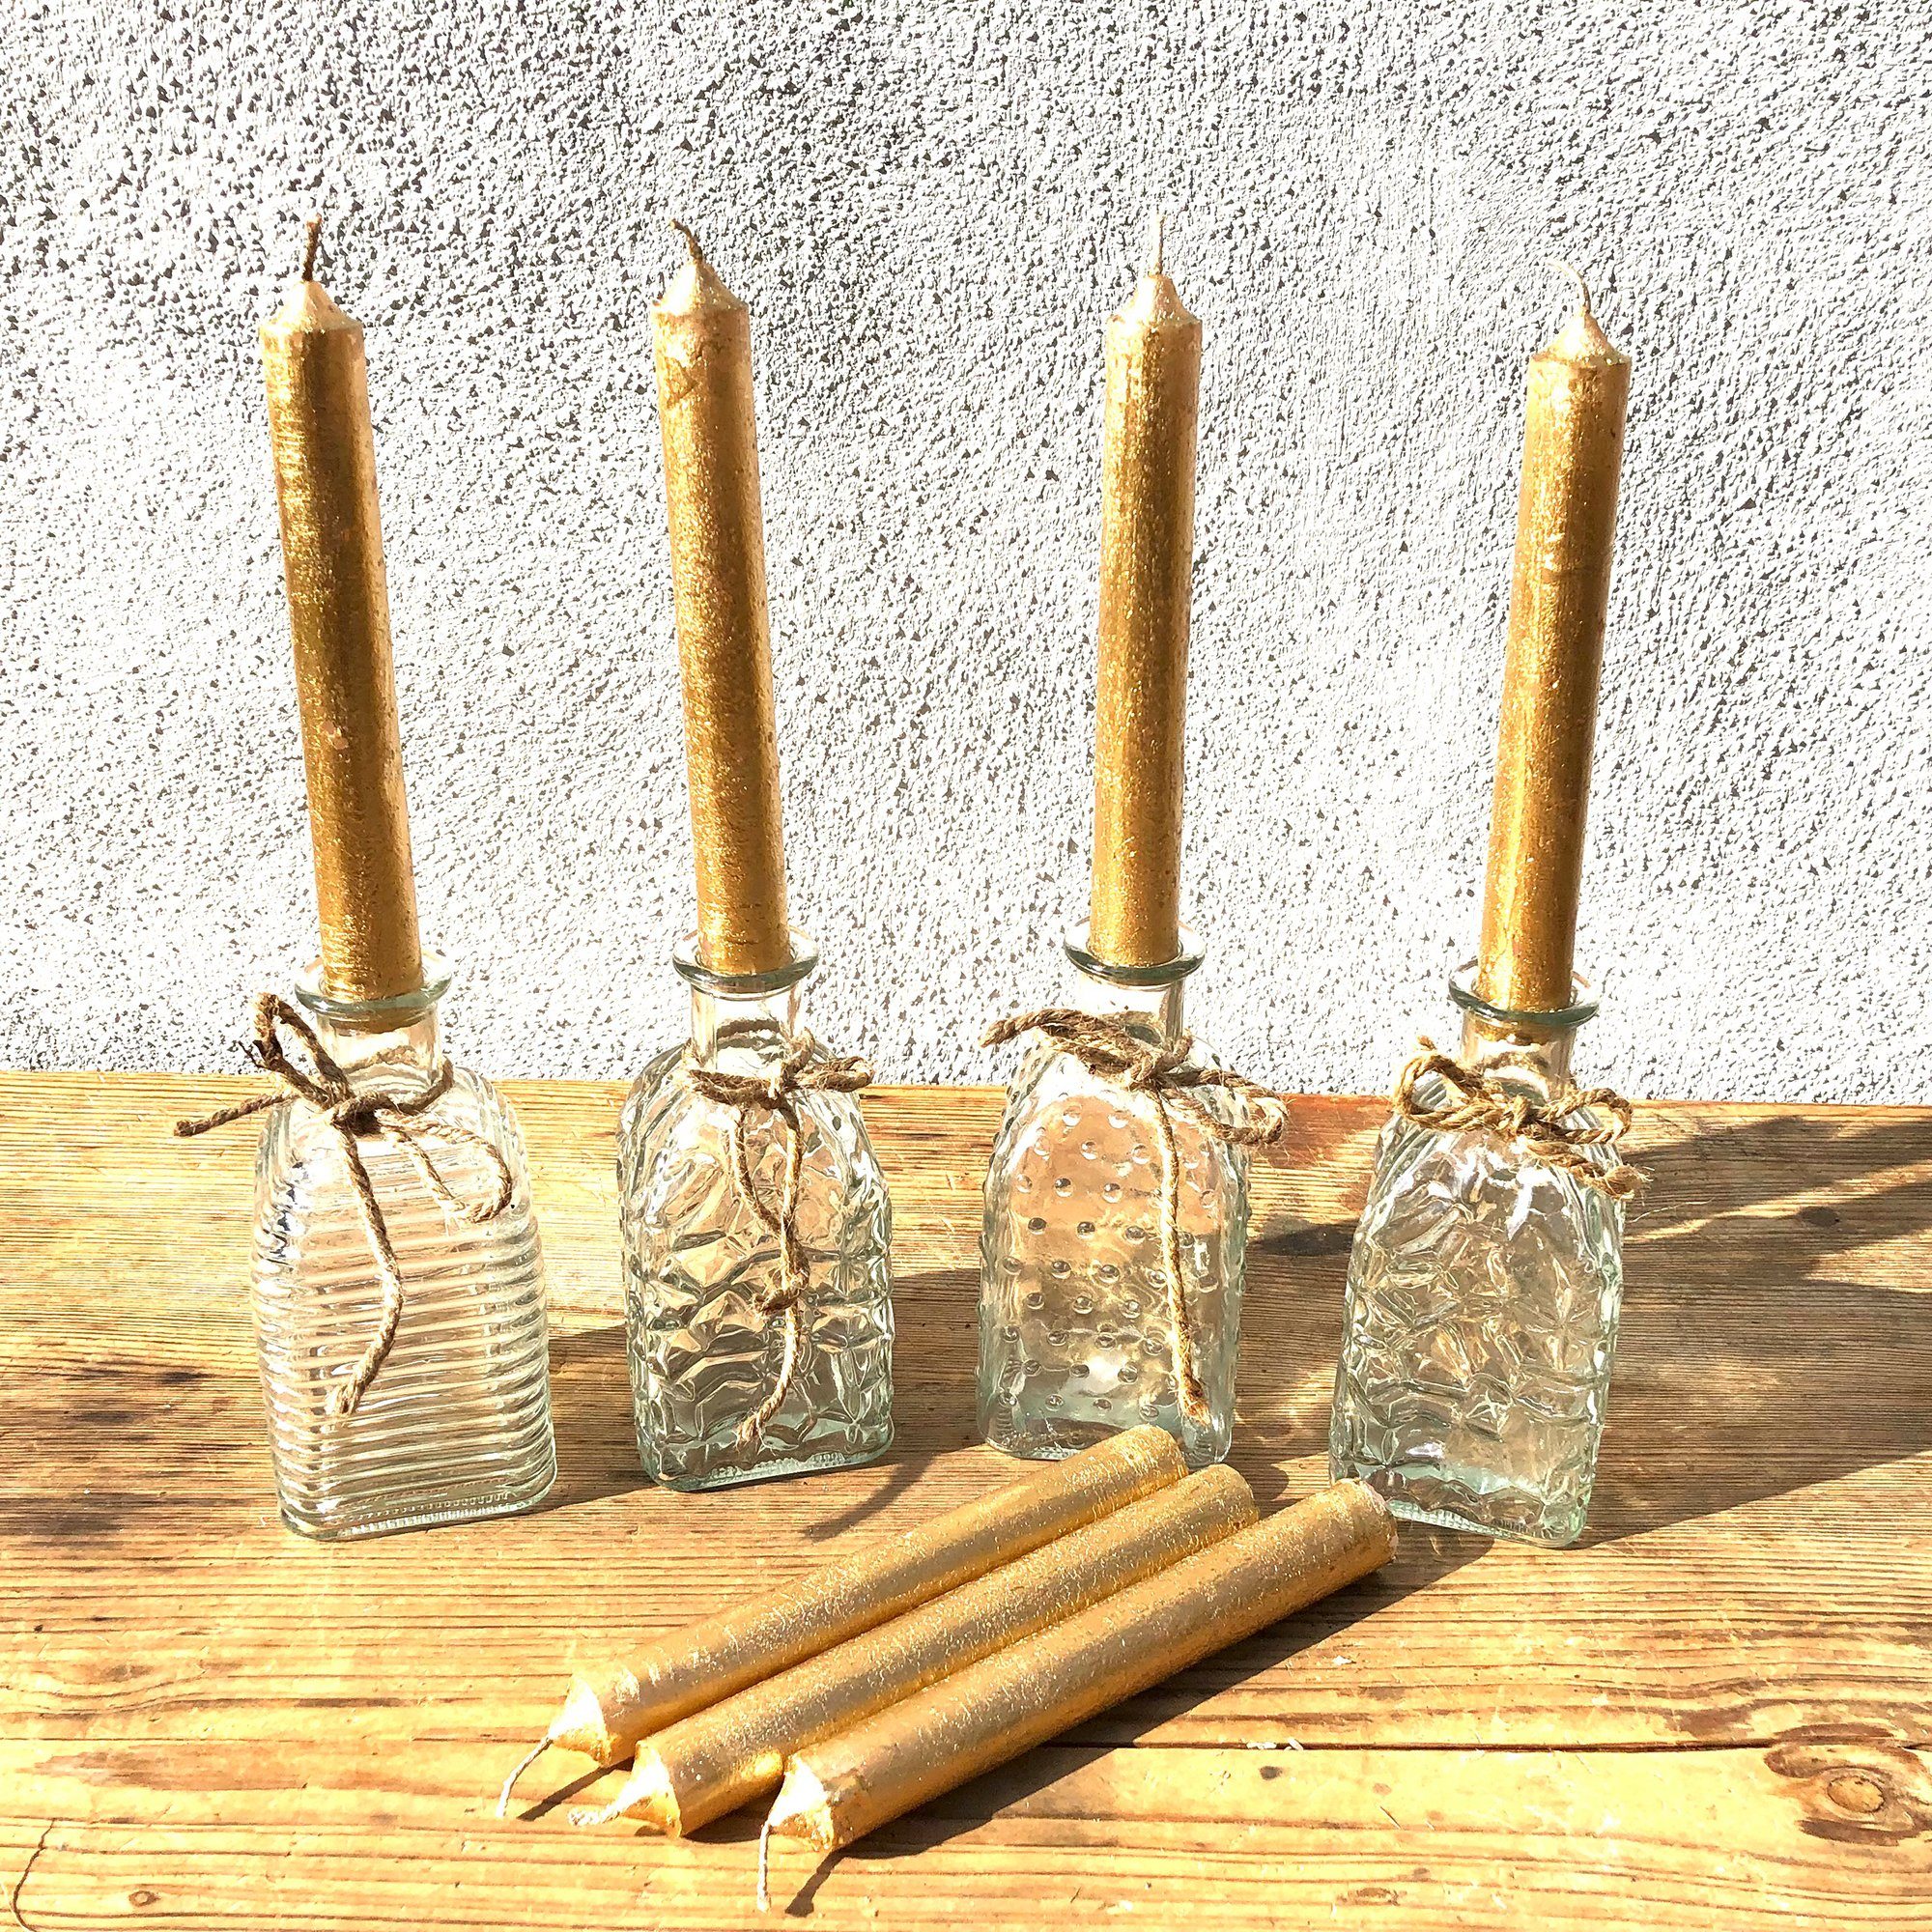 cm), Annastore 13,5 12 cm - Ø Deko-Flaschen (H Glasfläschchen, Blumenvasen Dekoflaschen, Vasen Glasvasen Dekovase aus 6,5 kleine Glasflaschen, Vintage Tischvasen Glas